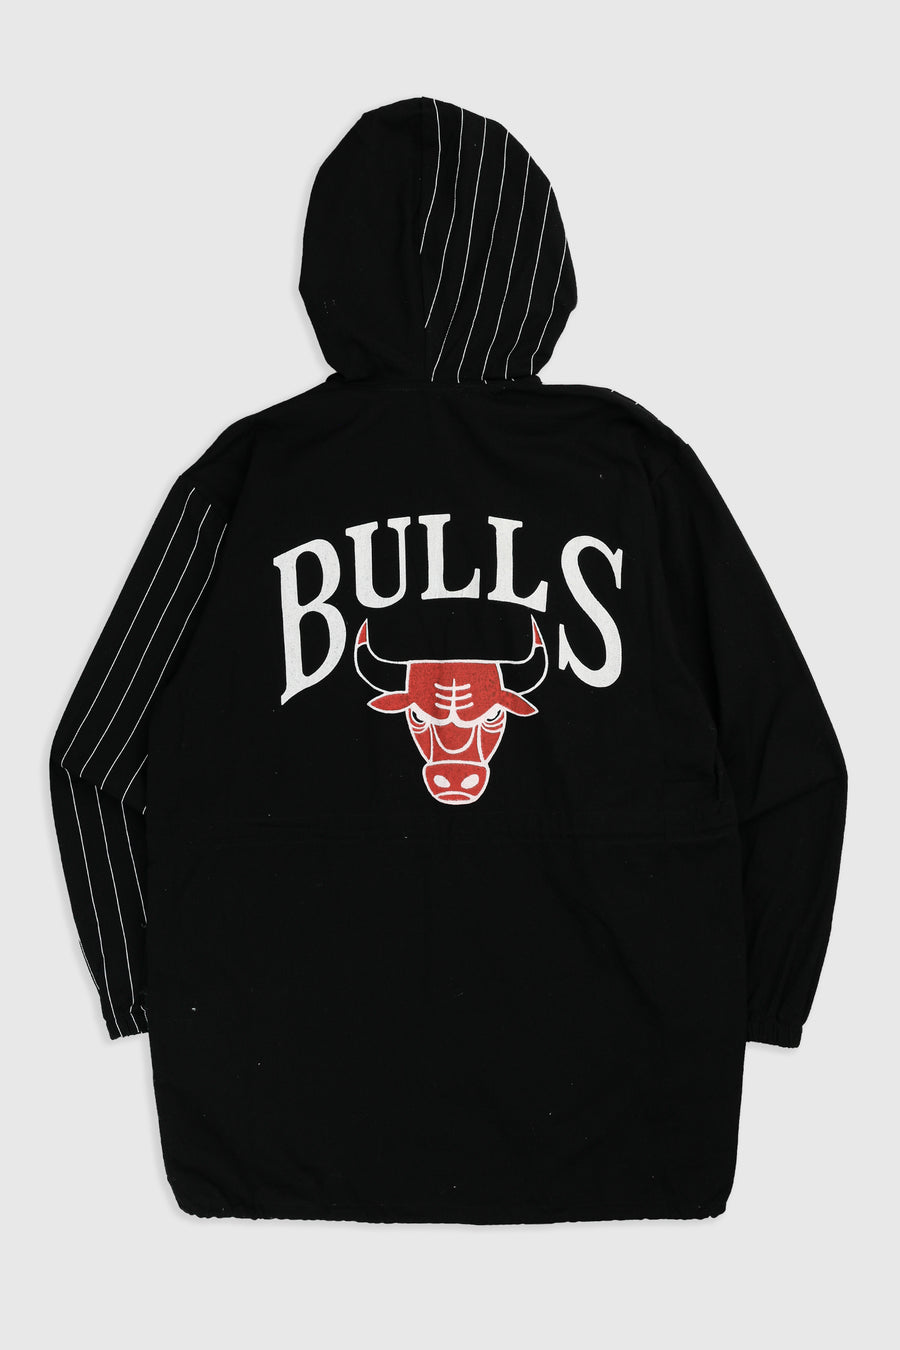 Vintage Chicago Bulls NBA Jacket - XL